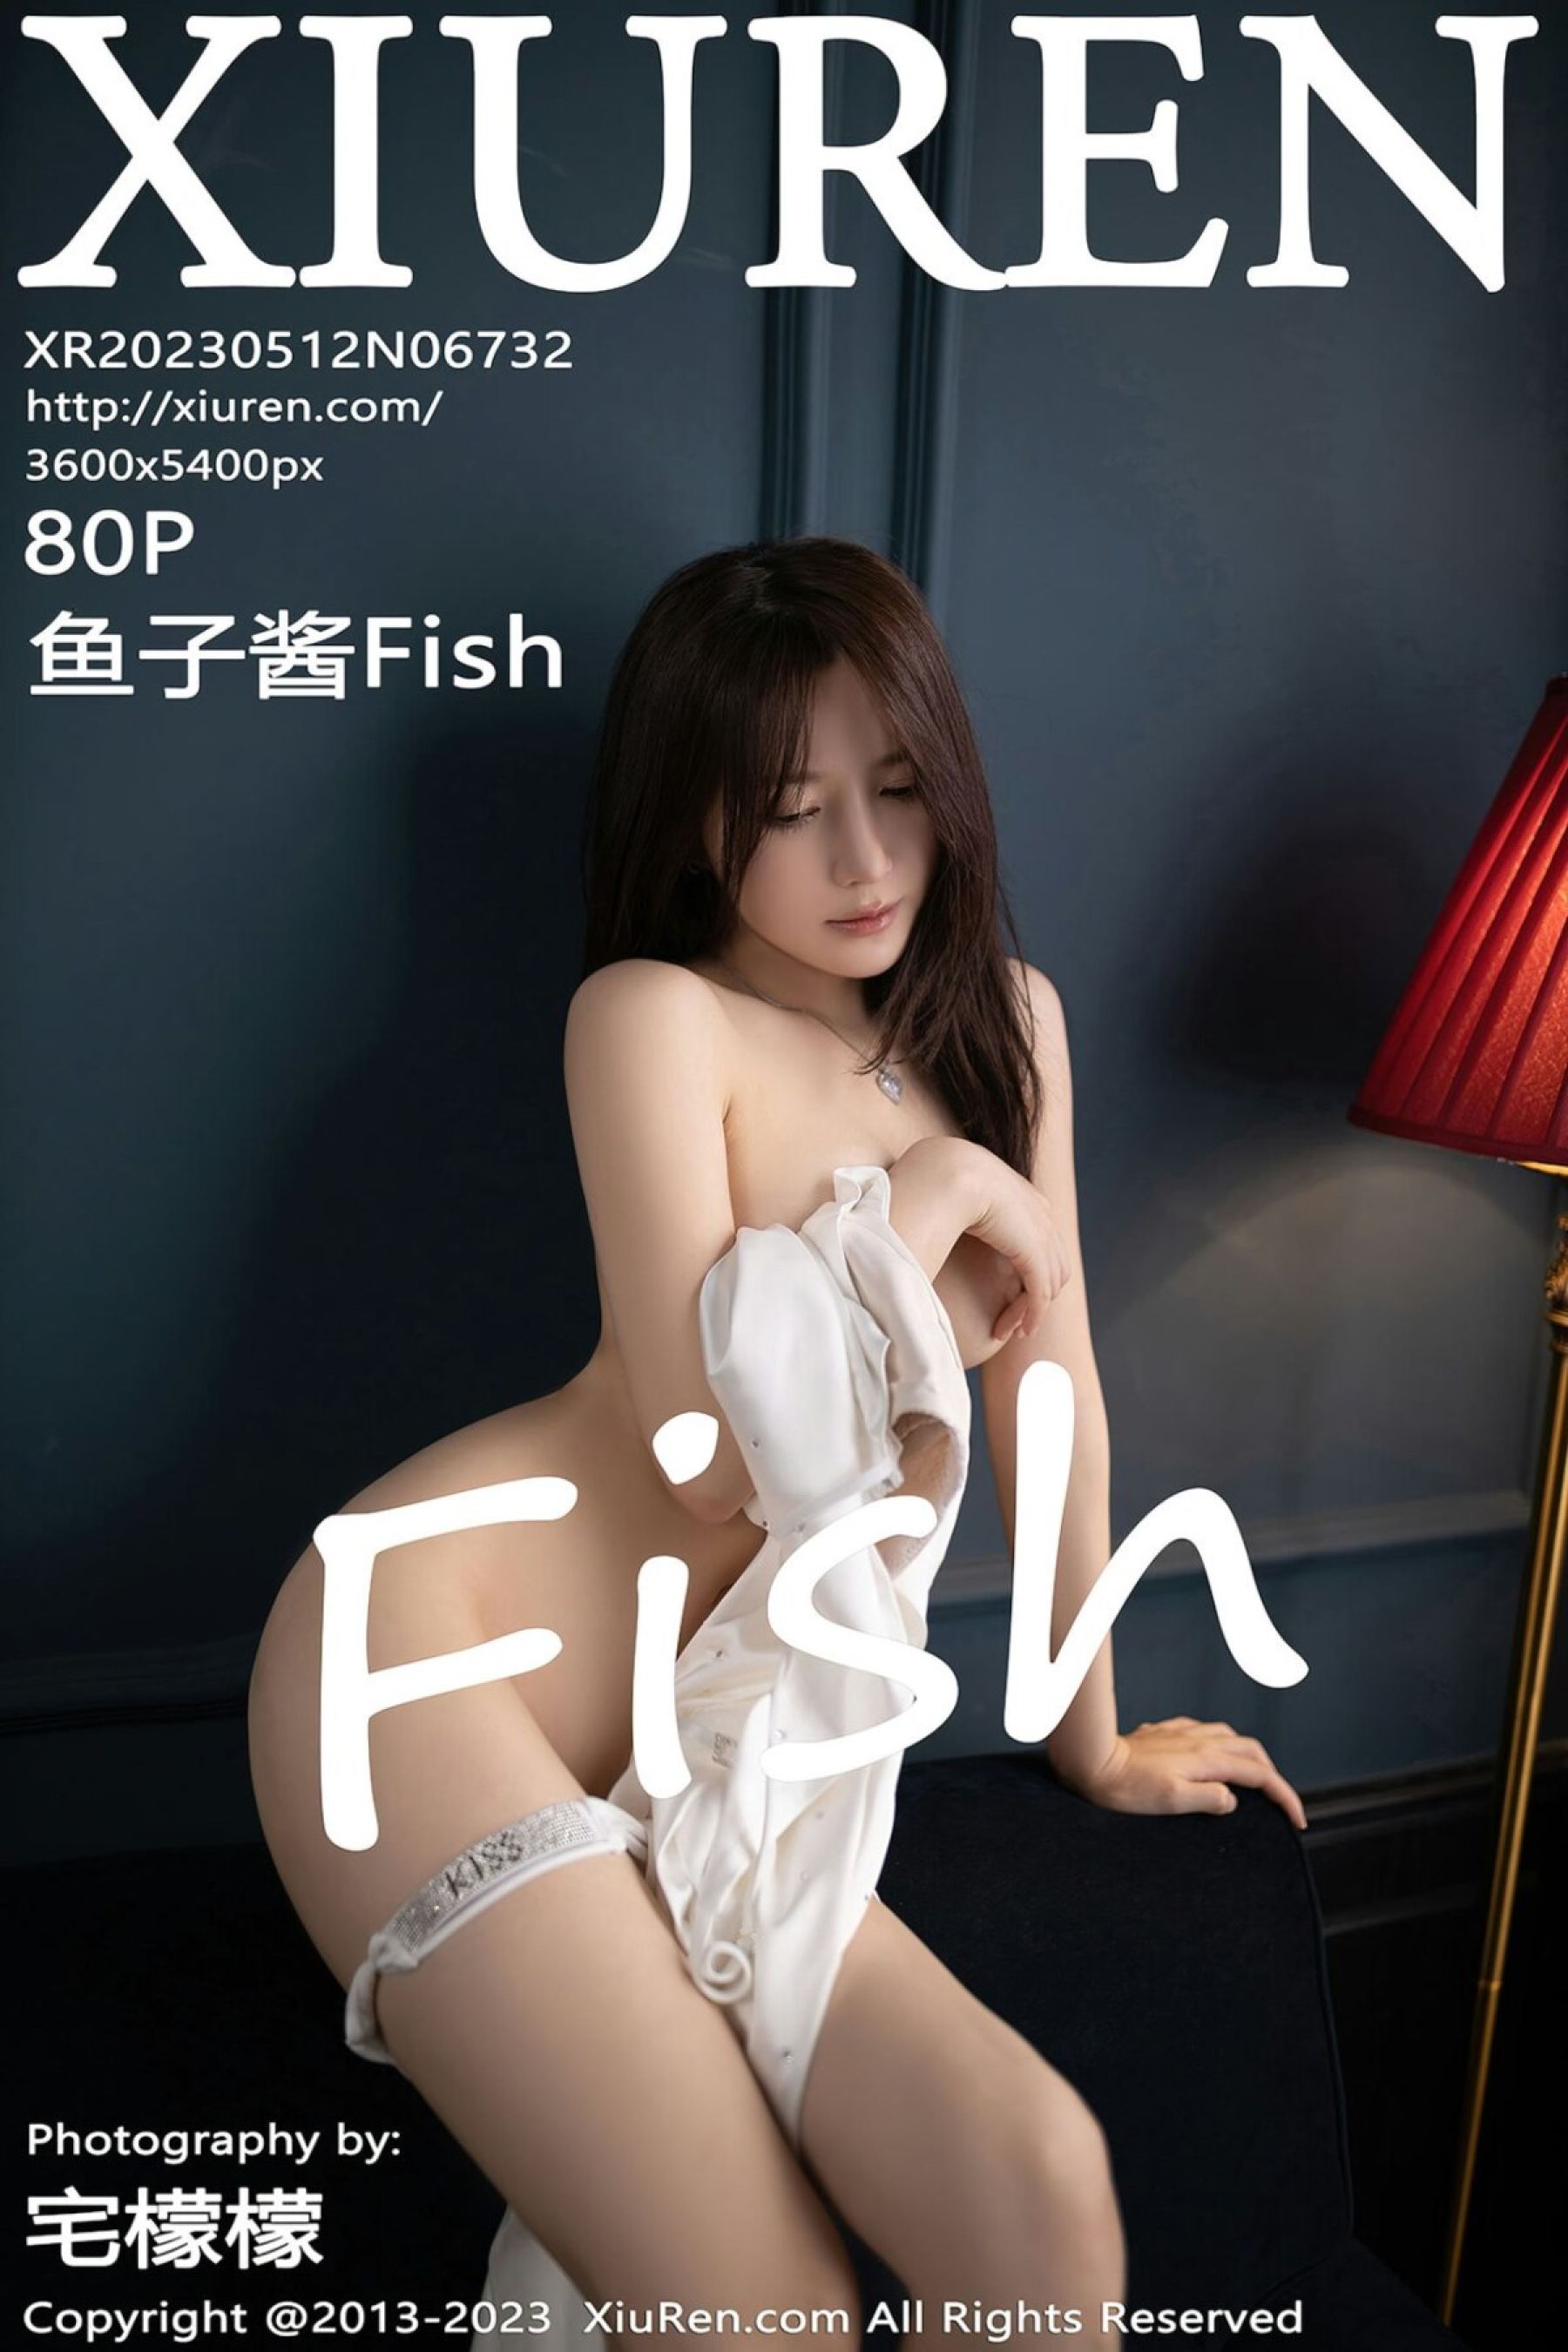 魚子醬FishVol. 6732 - 貼圖 - 清涼寫真 -